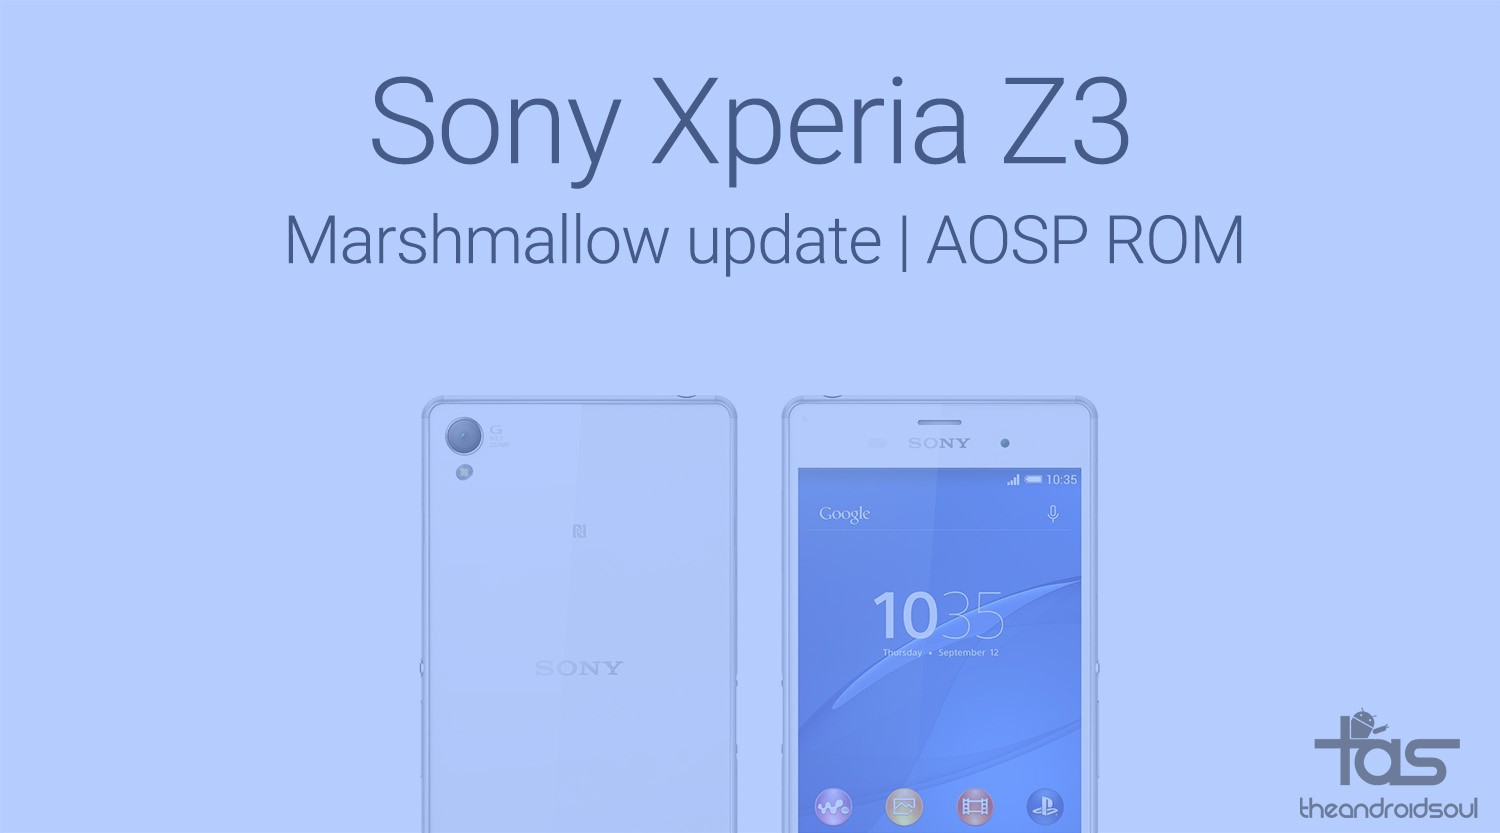 Sony Xperia Z3 Marshmallow ROM disponible para descargar, versión experimental en el mejor de los casos